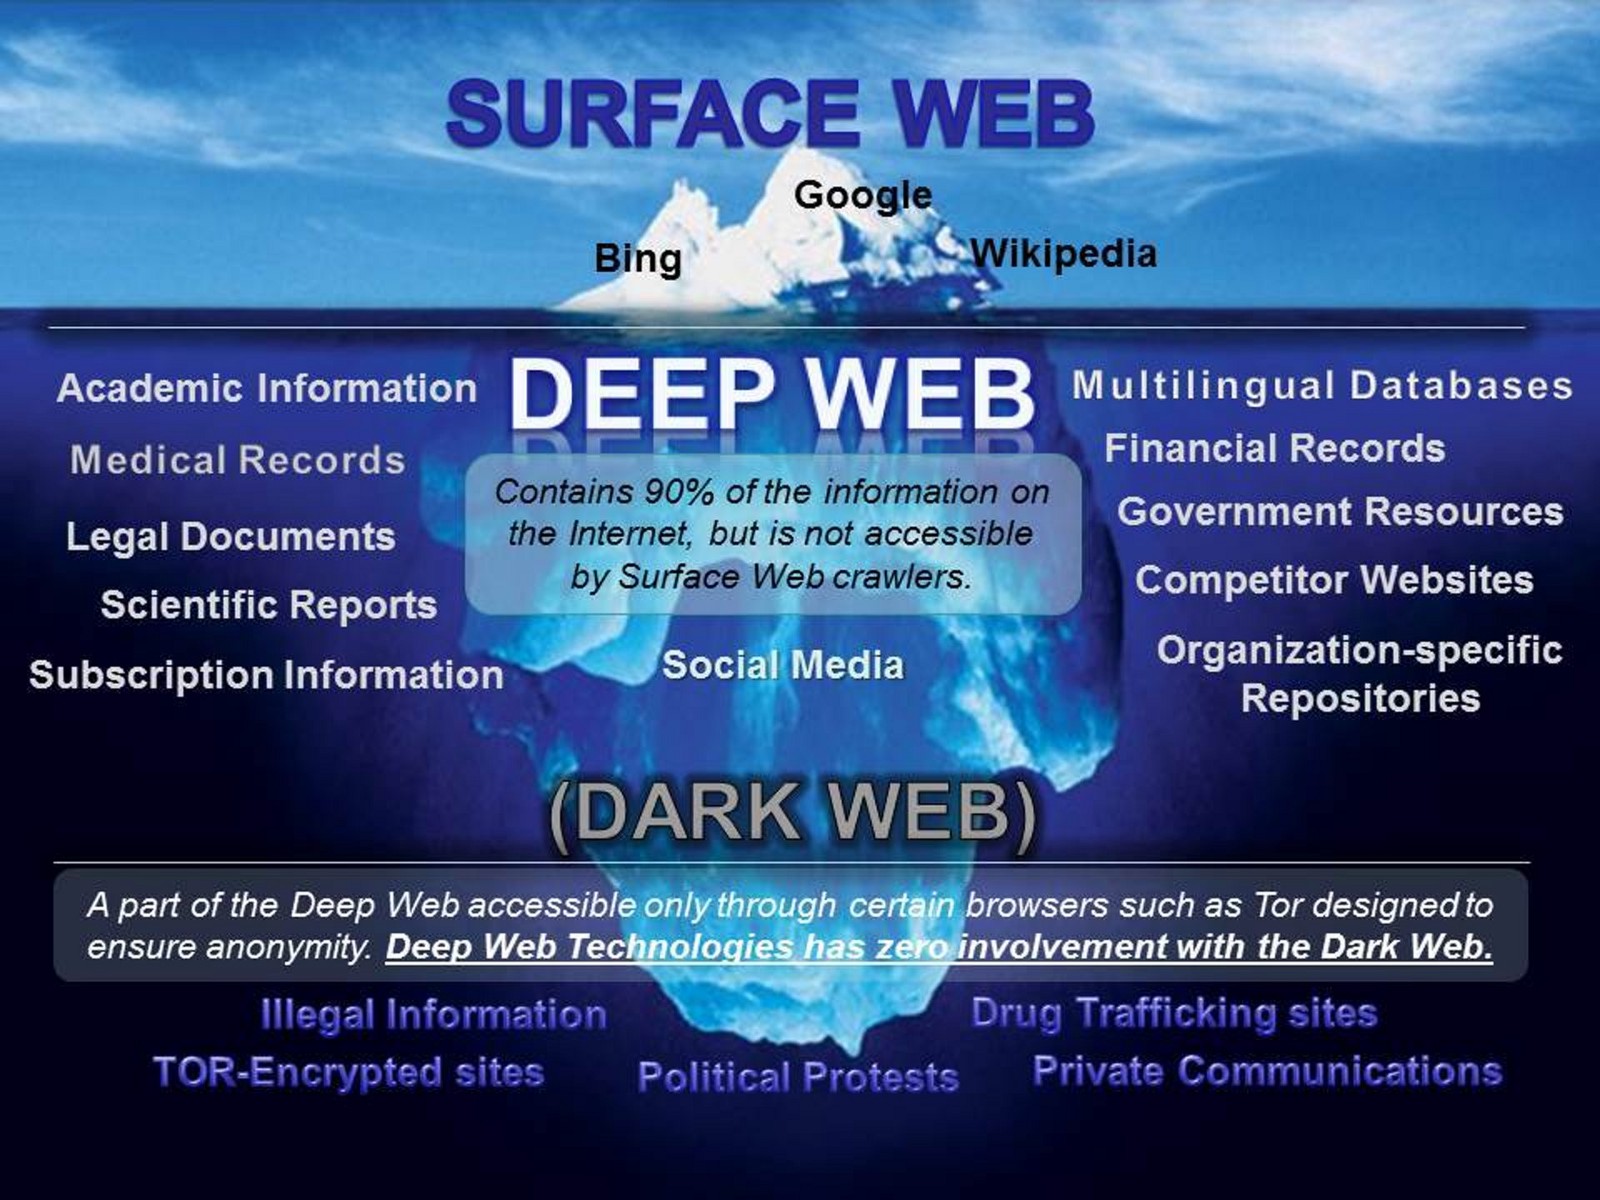 Dark Web Market